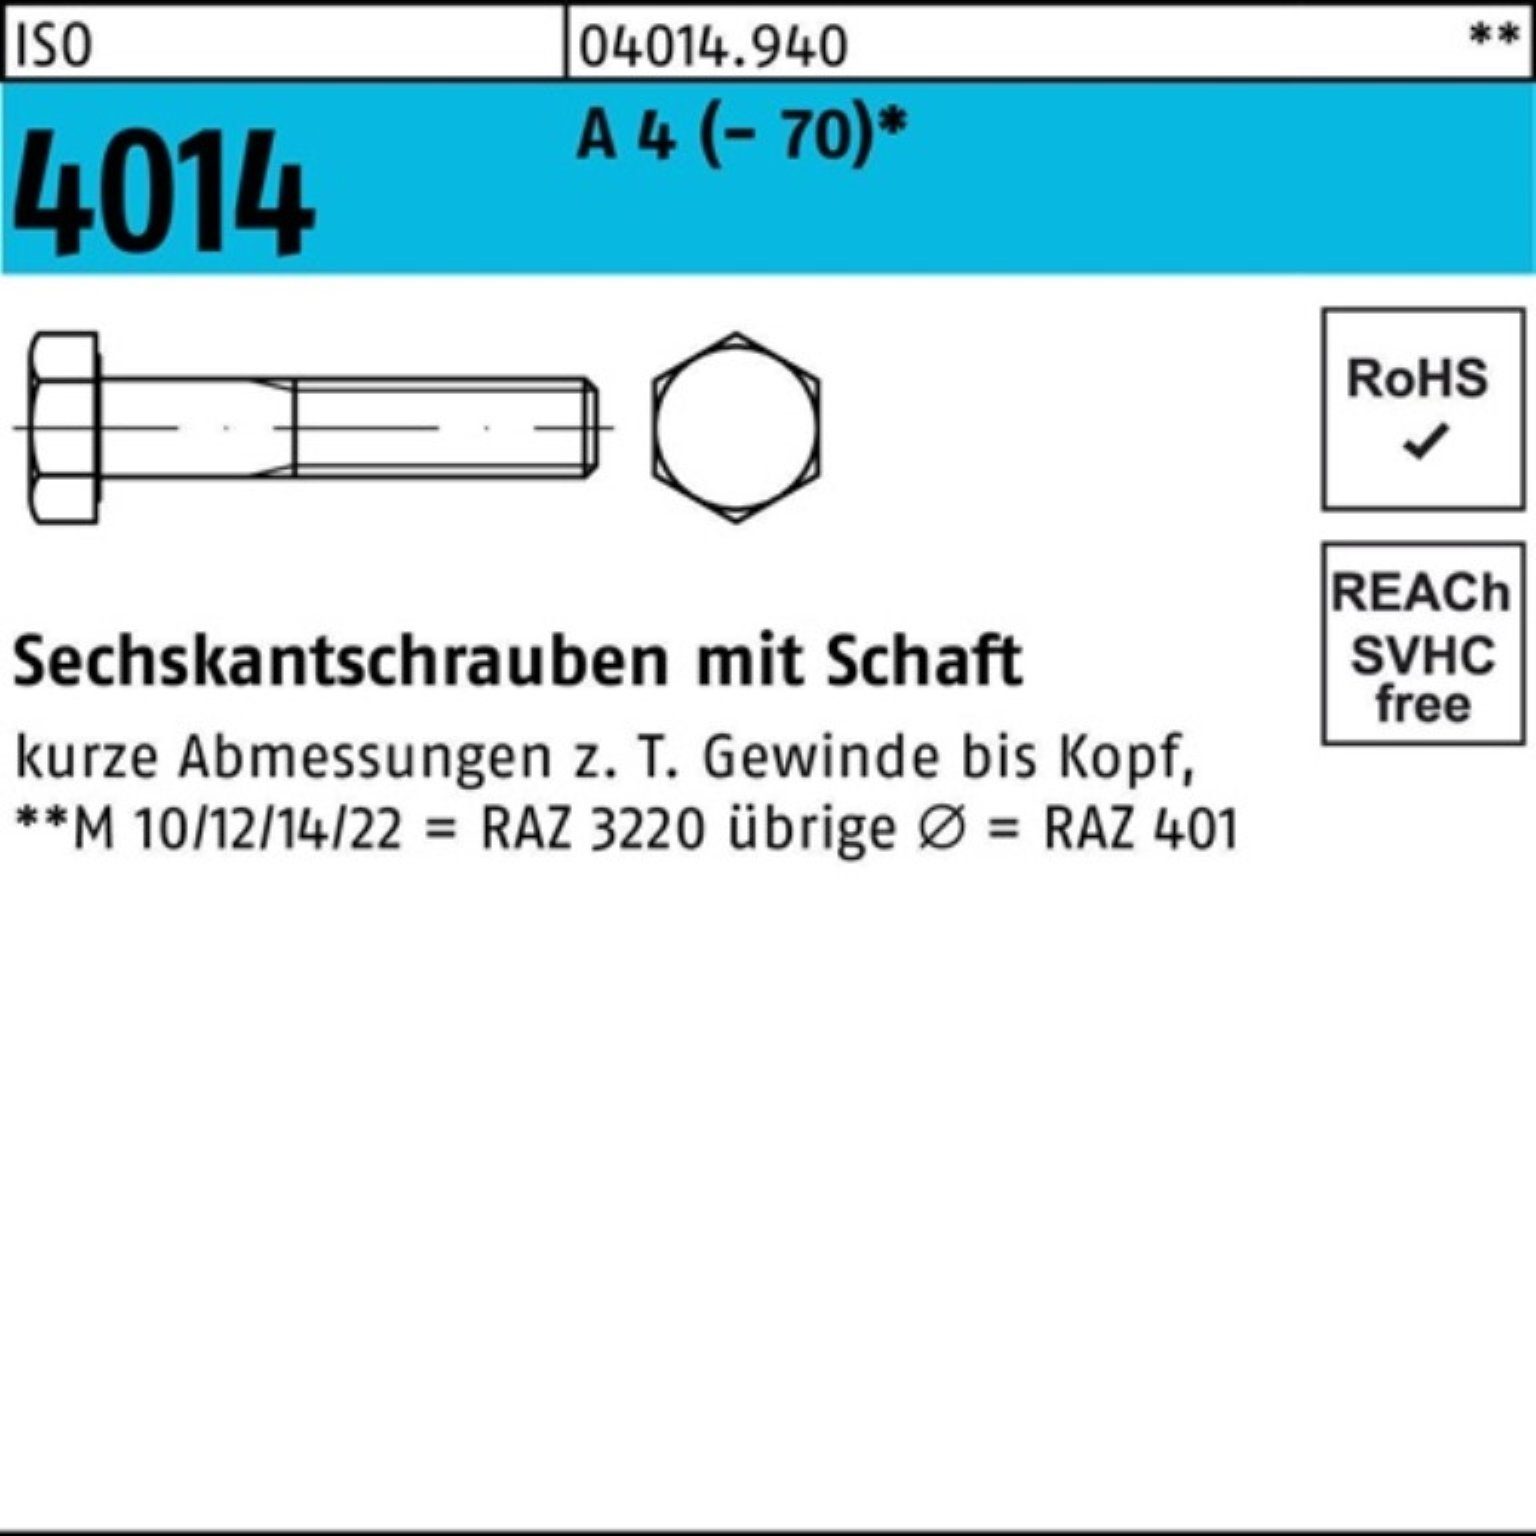 100 (70) Bufab 4 A St ISO Sechskantschraube Sechskantschraube 4014 Schaft Pack 100er M6x 70